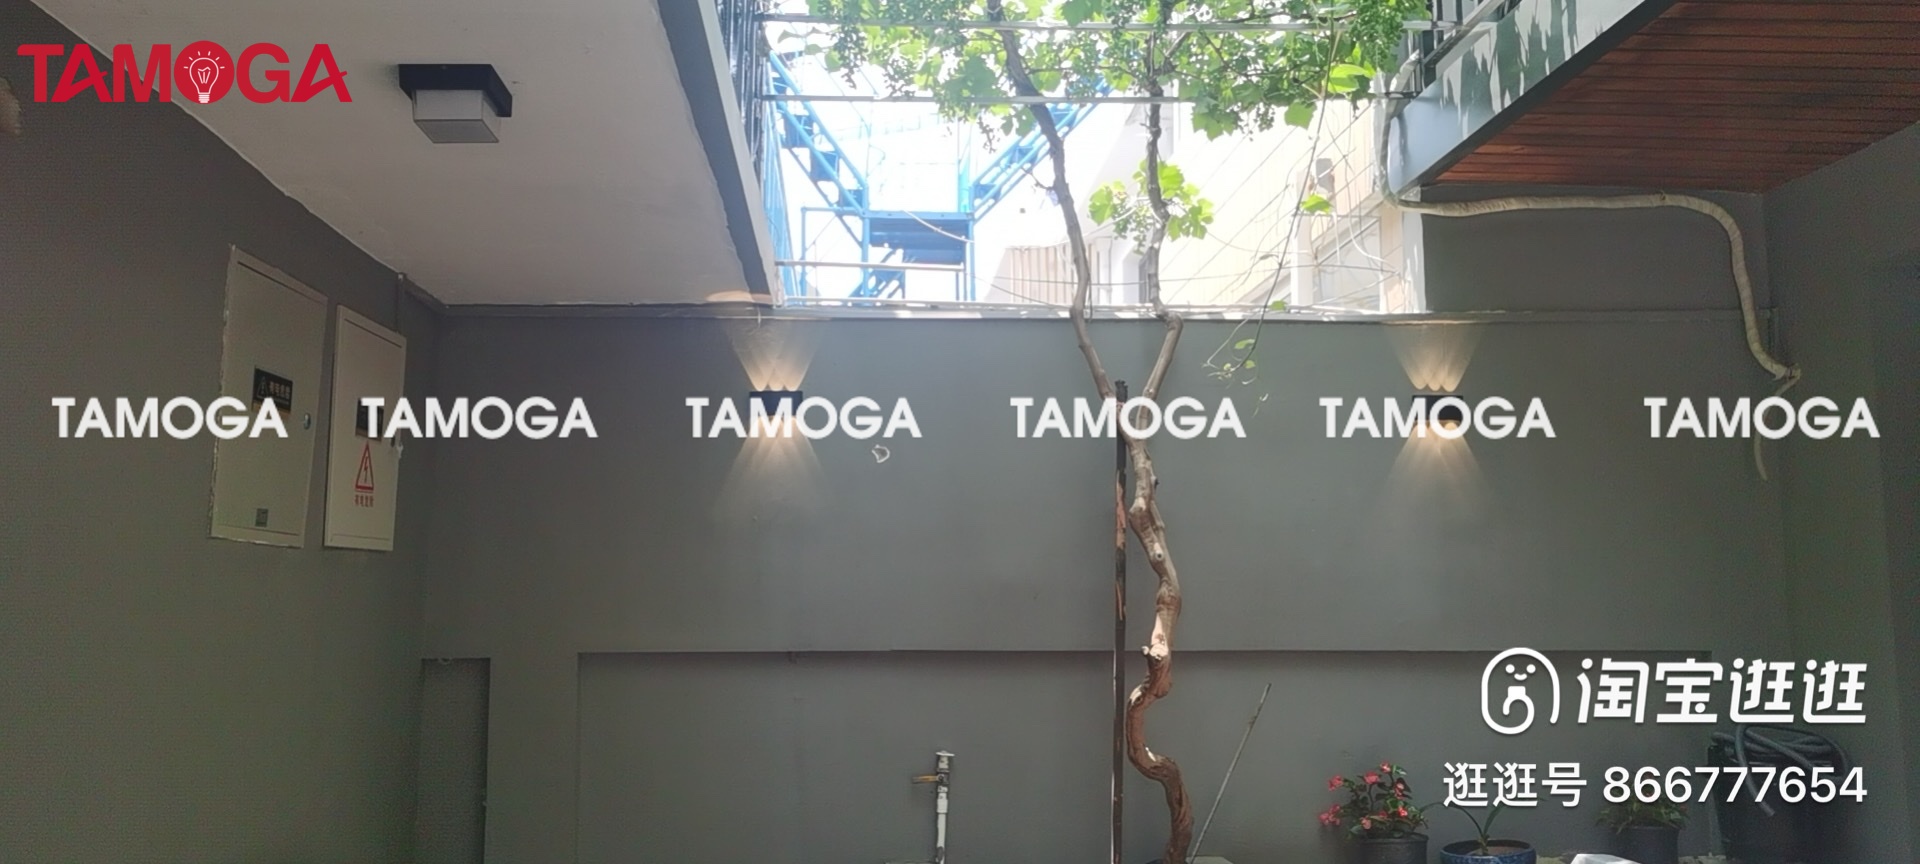 Đèn tường ốp tường hình bán nguyệt TAMOGA RATER 3001 võ hợp kim chống nước